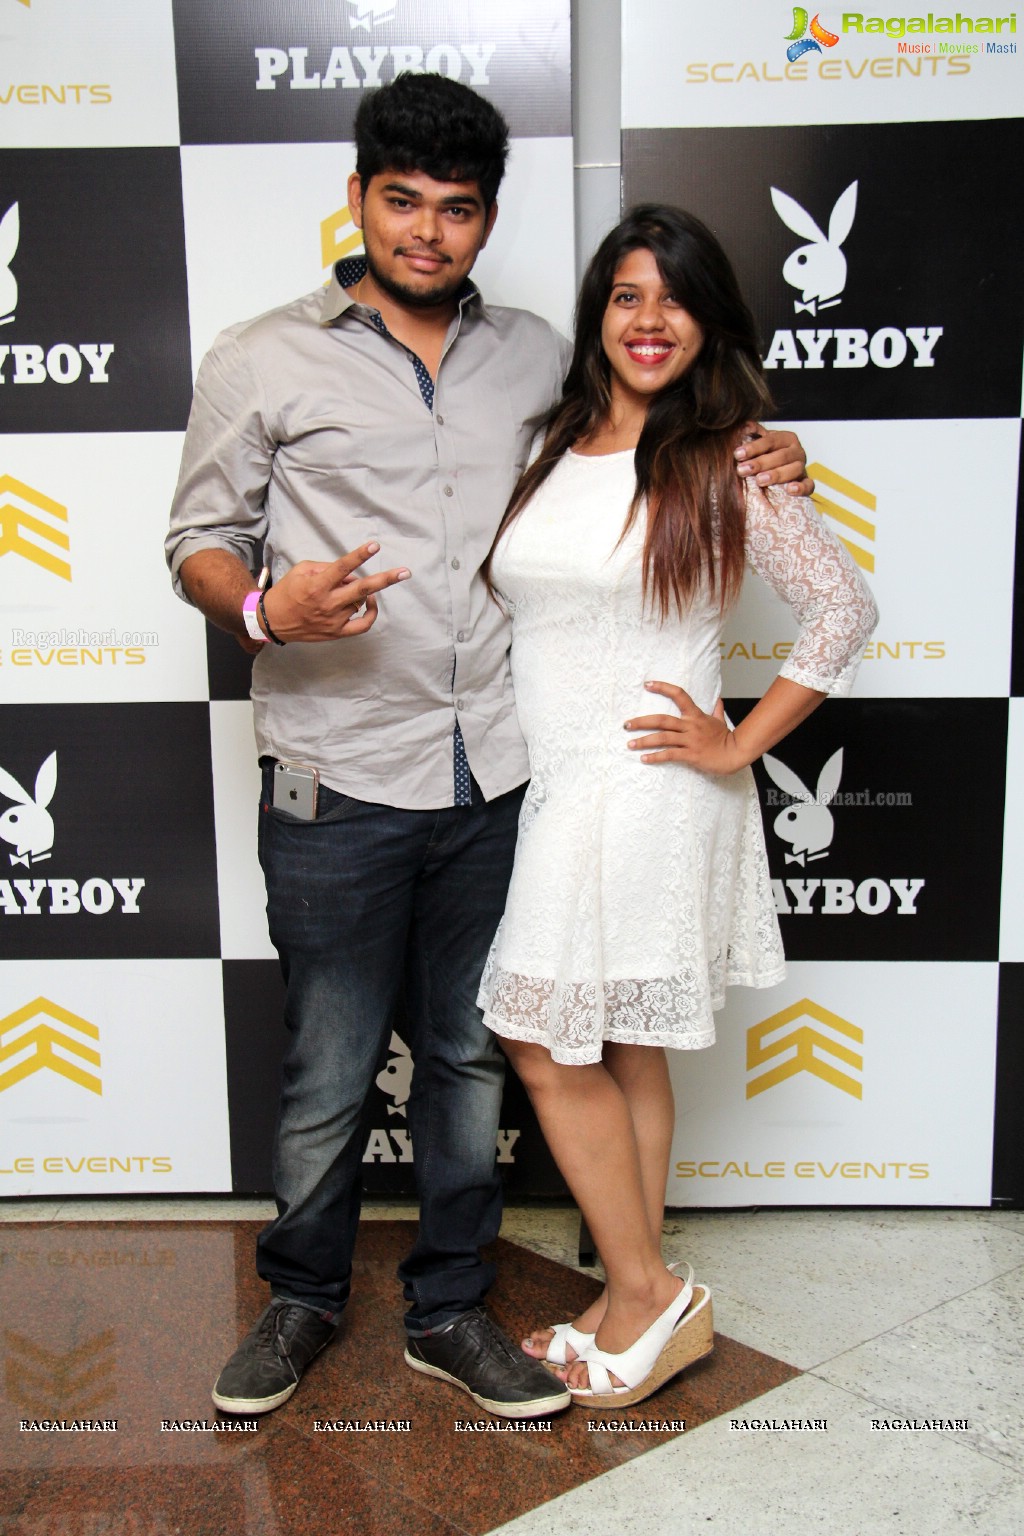 Playboy Club, Hyderabad - May 14, 2016